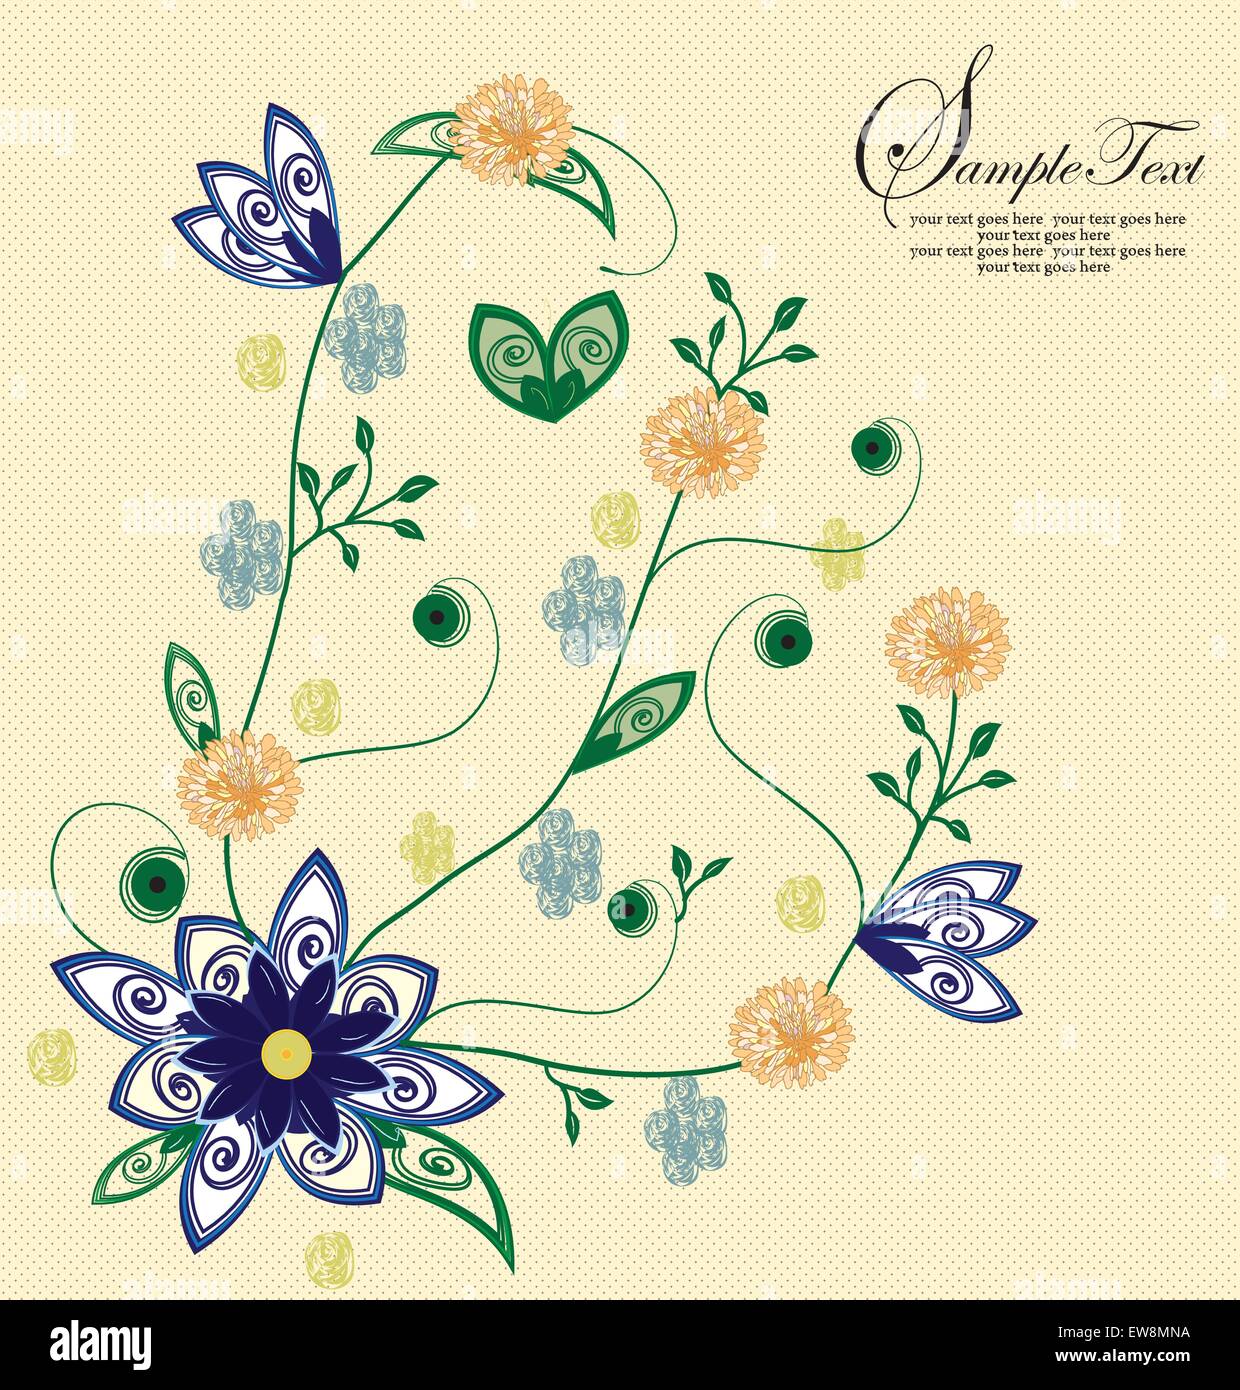 Vintage scheda invito ornato di eleganti astratta Retrò design floreale, royal blu e arancio fiori sul giallo pallido maglia indietro Illustrazione Vettoriale